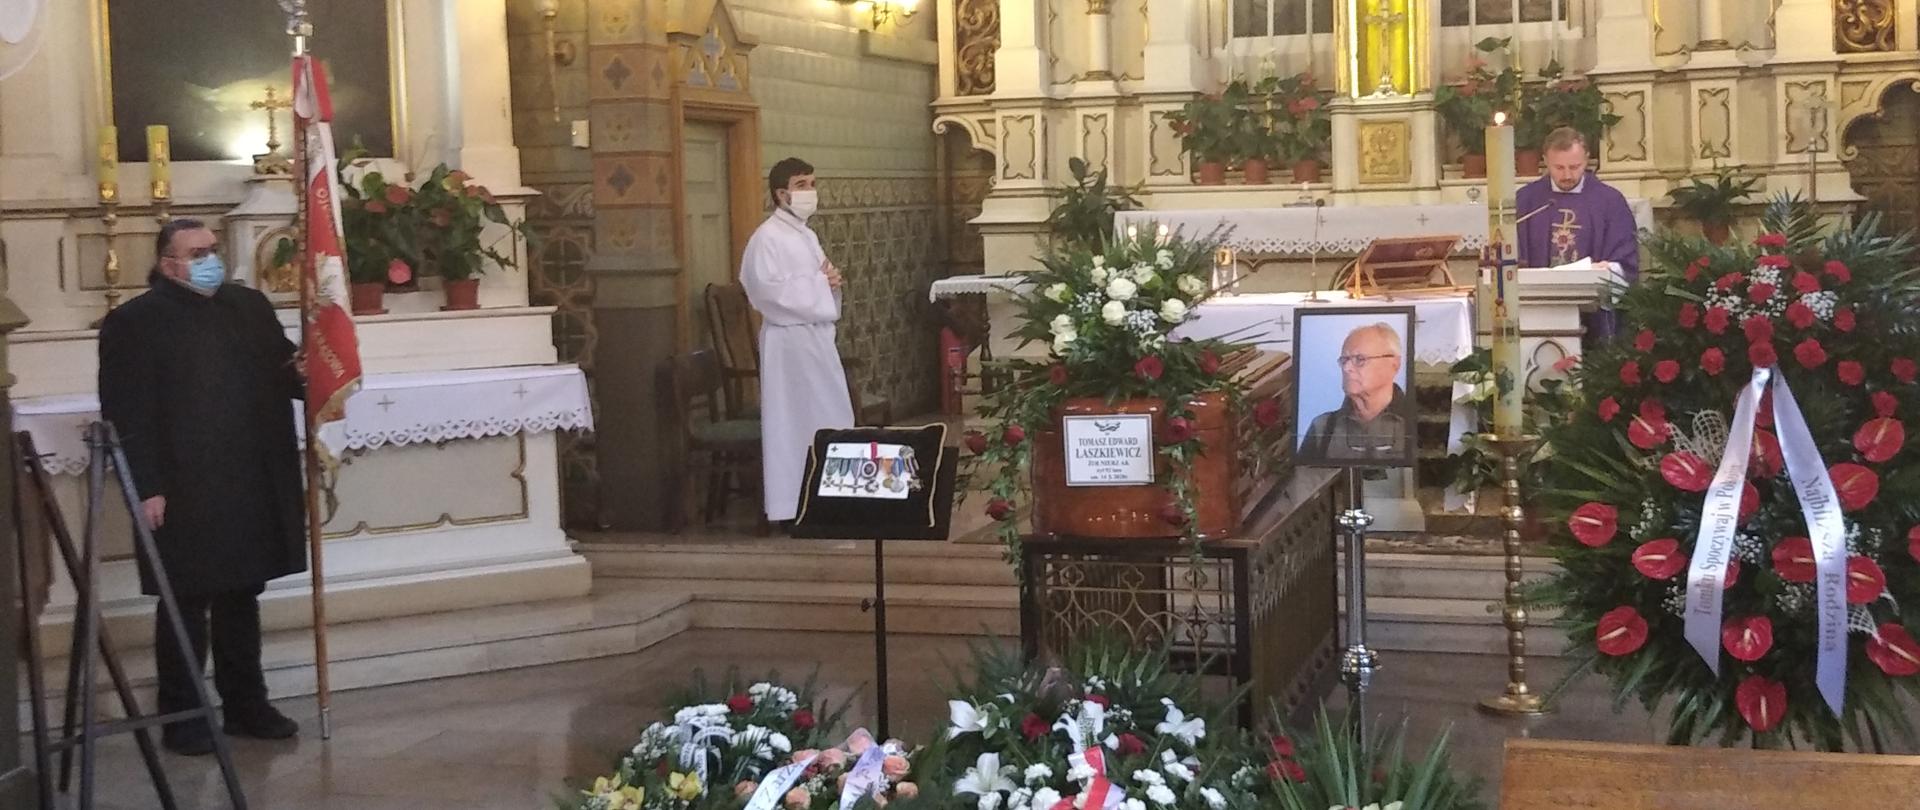 Zdjęcie zrobione jest w kościele podczas pogrzebu. Znajduje się na nim trumna oraz wiązanki kwiatów.